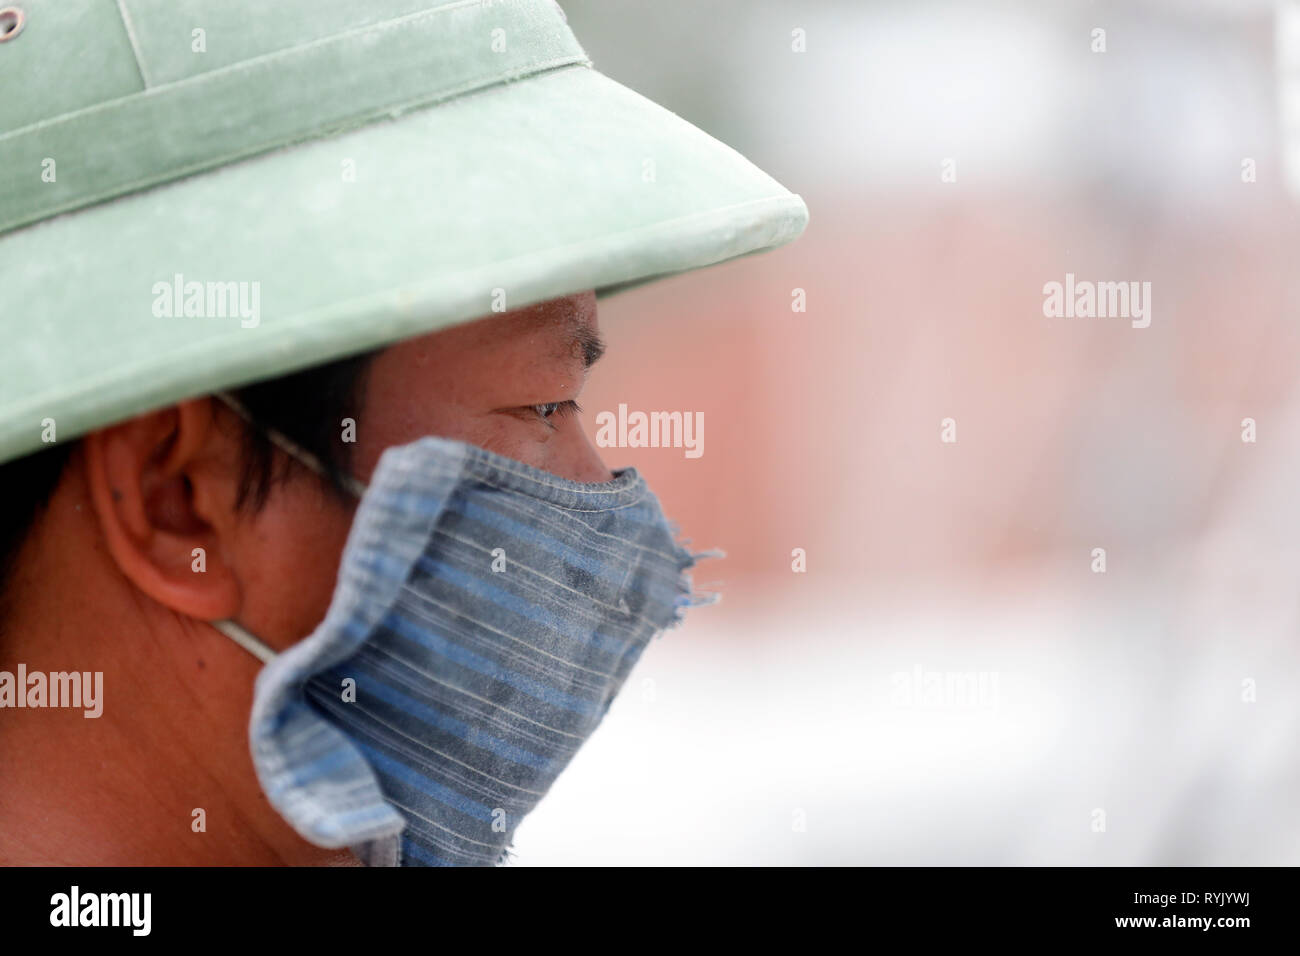 Sitio en construcción. Trabajador utilizando Máscara de protección. Vung Tau. Vietnam. Foto de stock